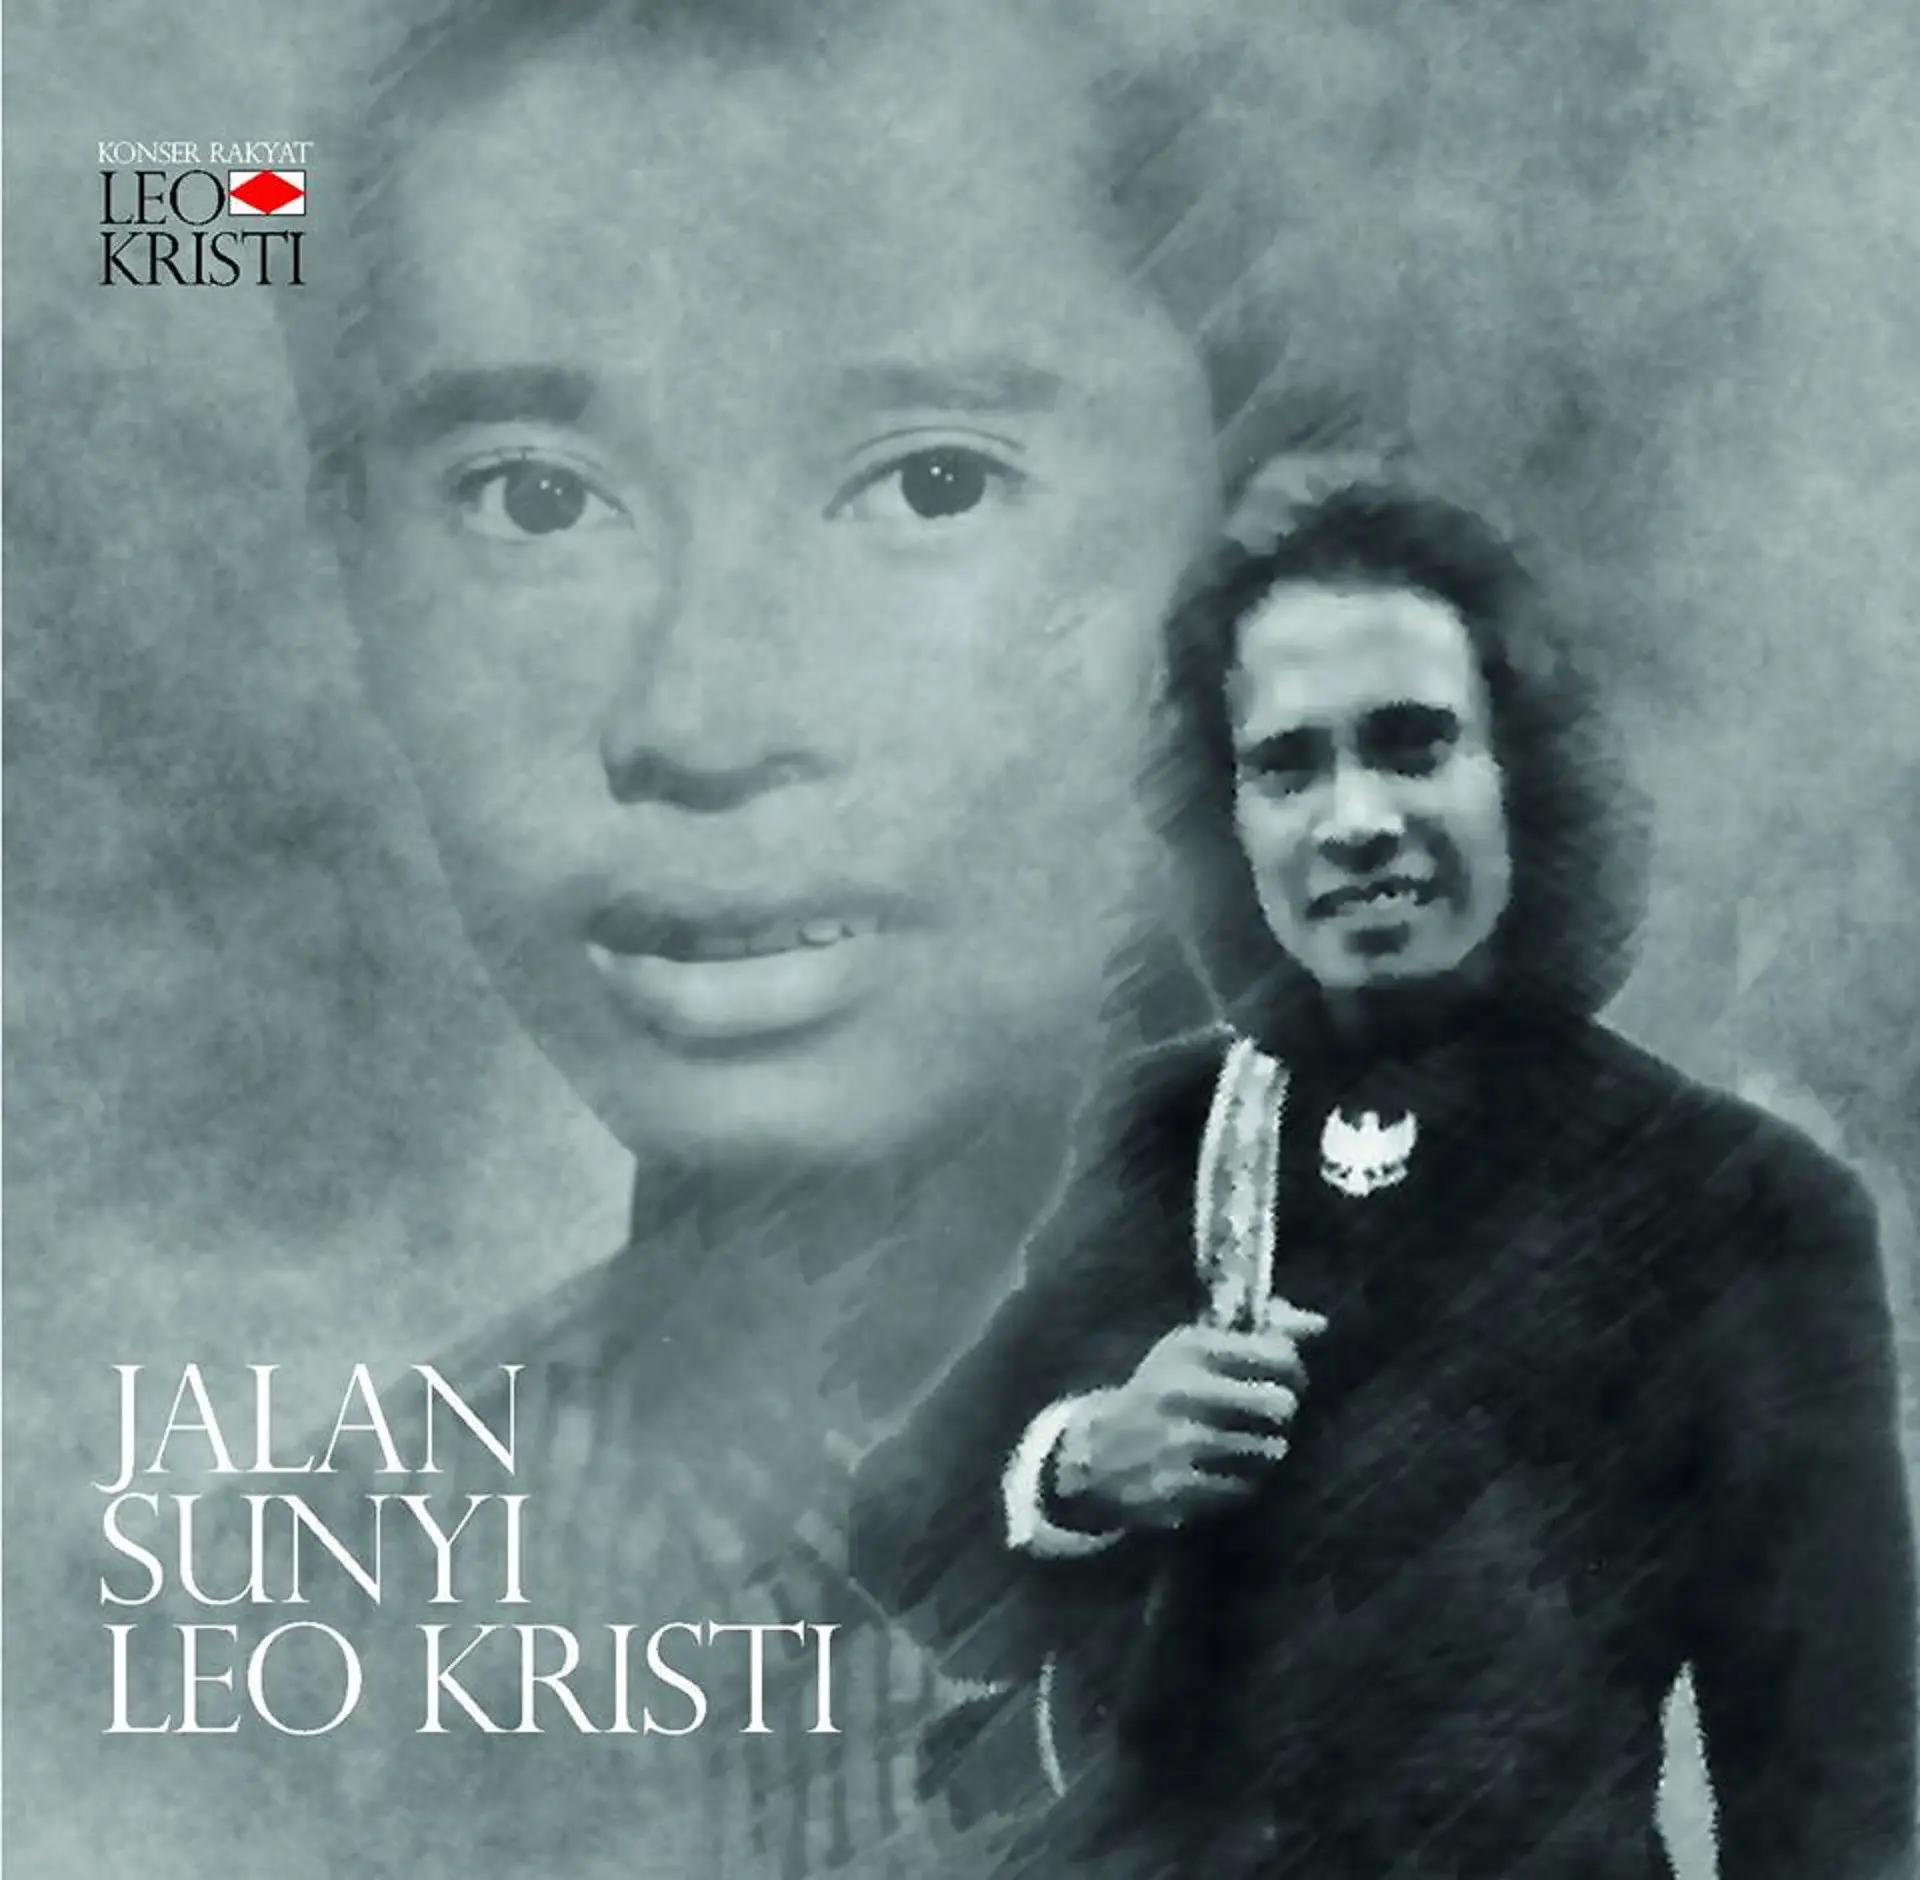 Leo Kristi, penyanyi yang kerap menyuarakan suara rakyat meninggal dunia. (Istimewa)